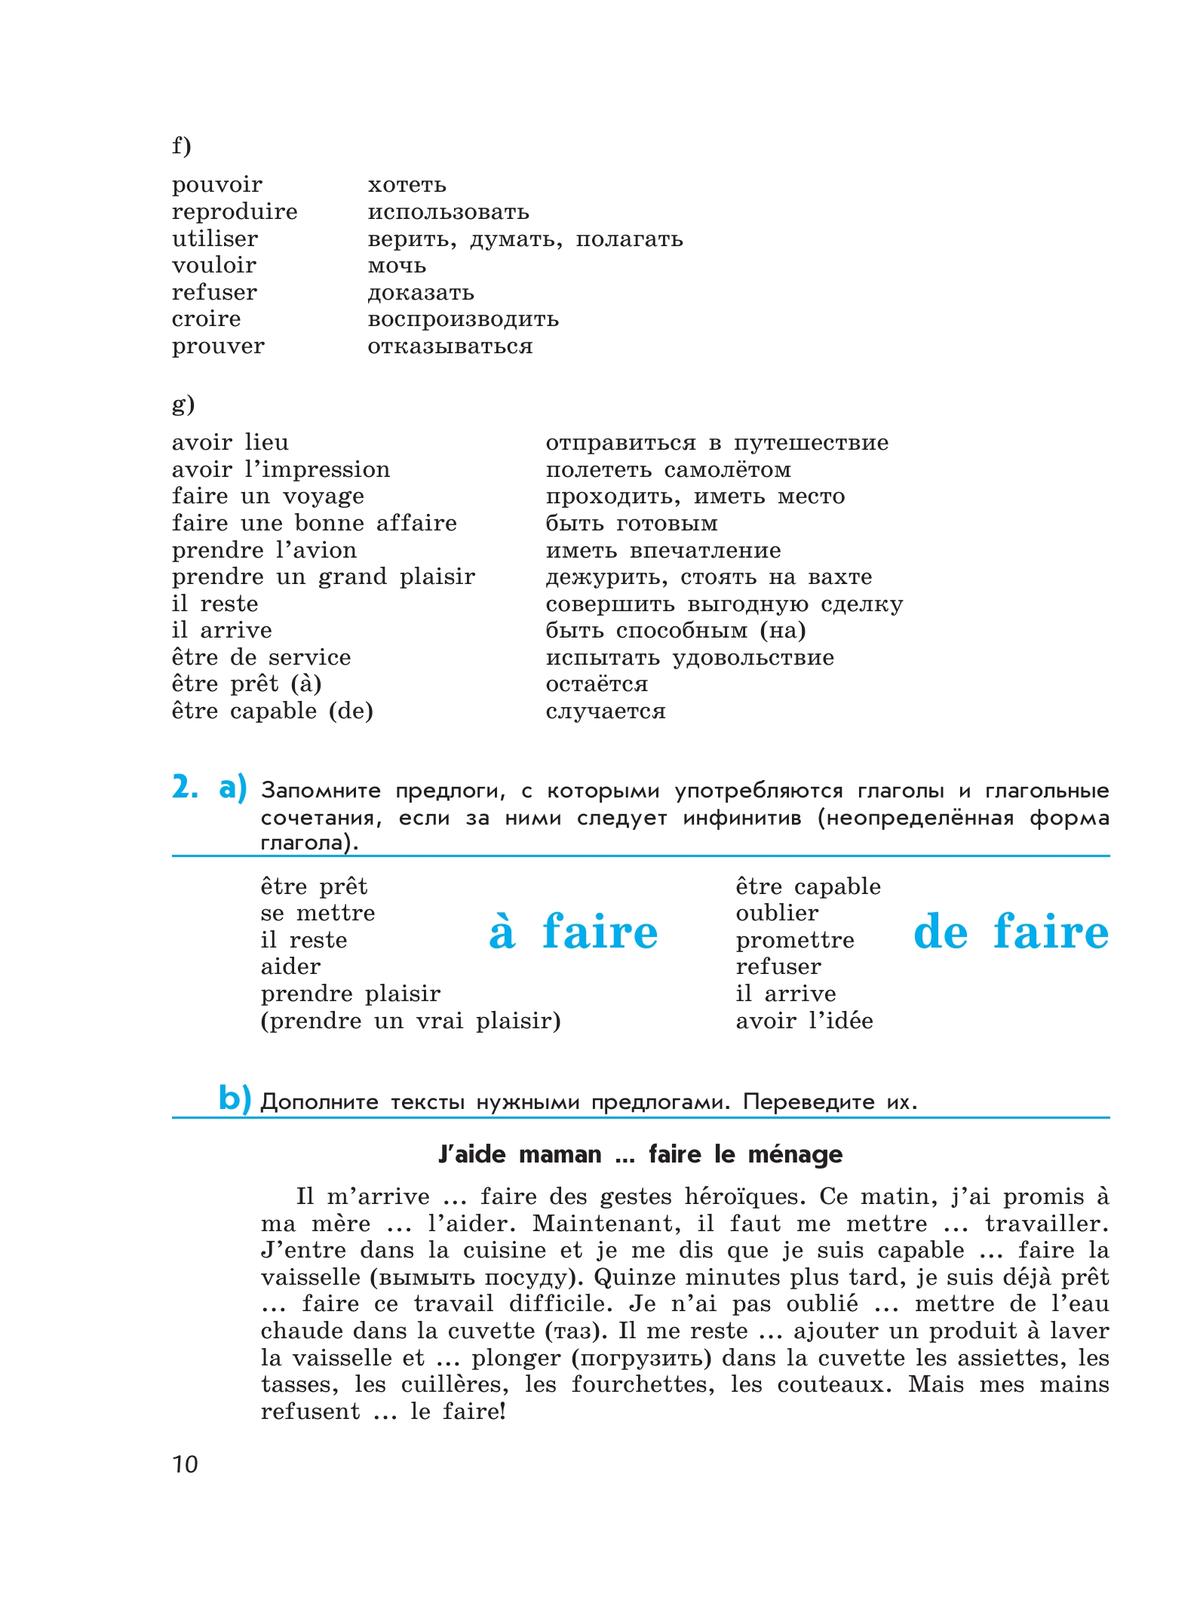 Французский язык. Второй иностранный язык. Сборник упражнений. 7 класс 2